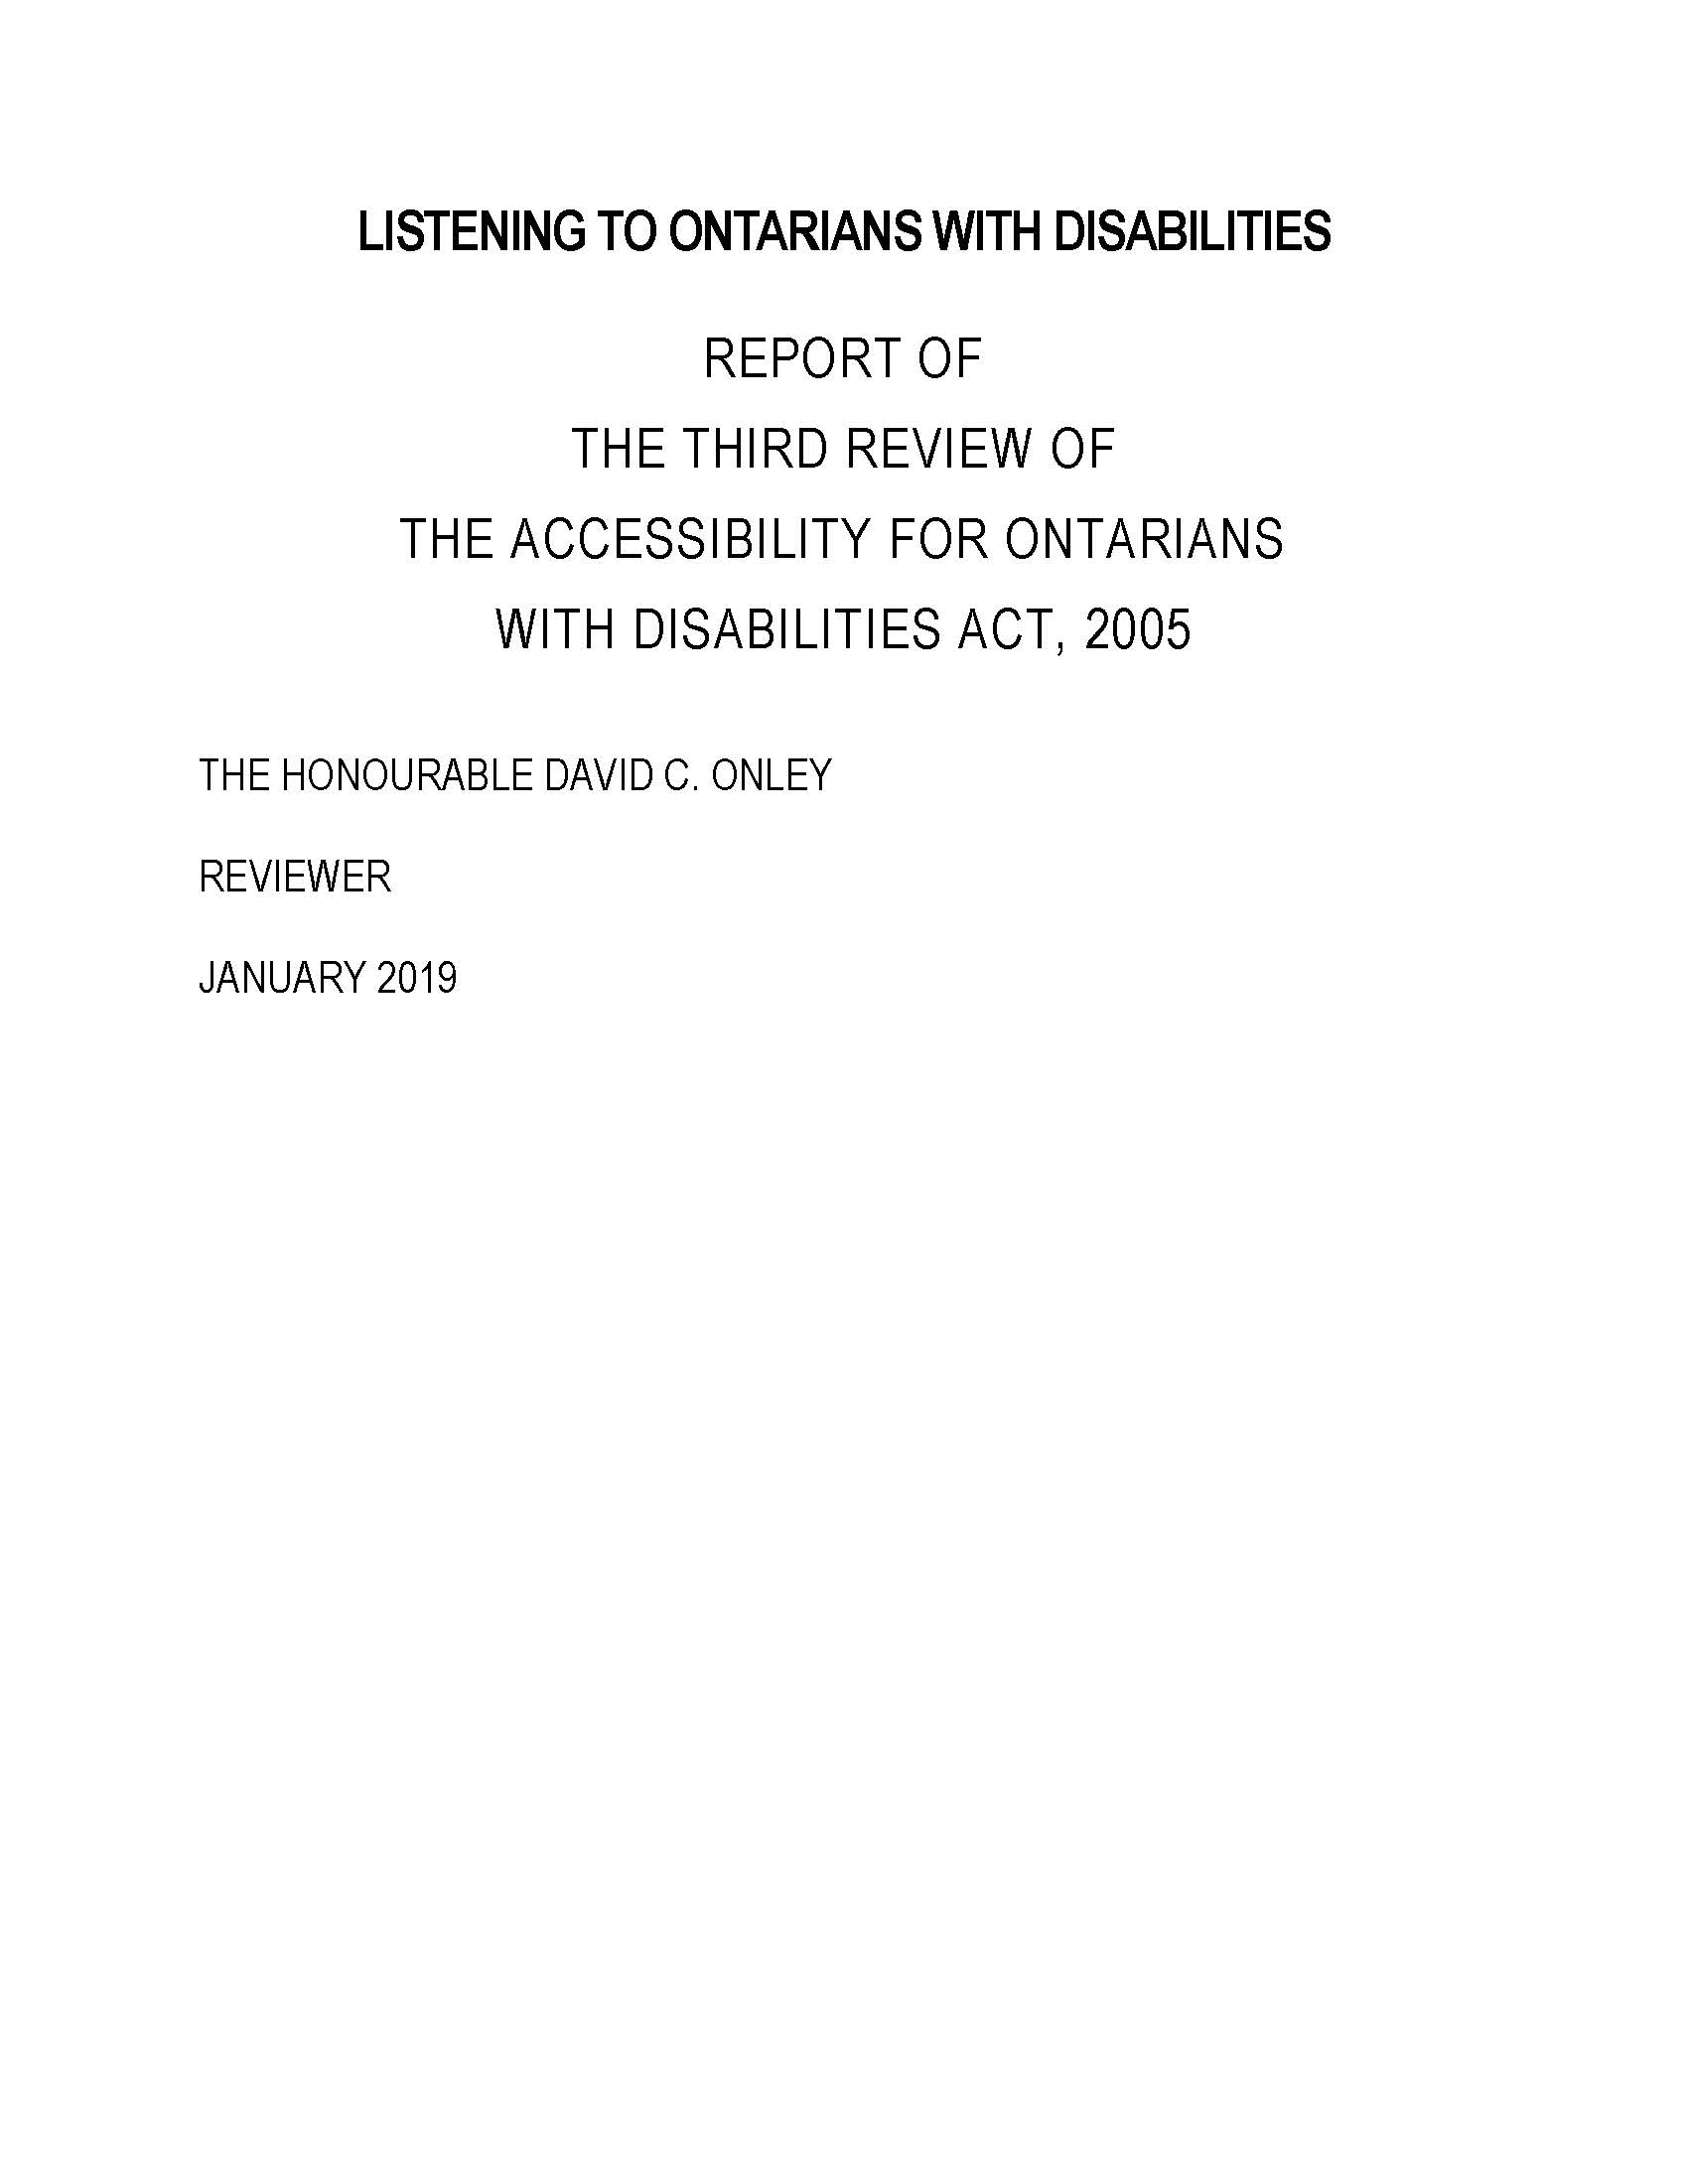 2019 Legislative Review of the AODA, 2005